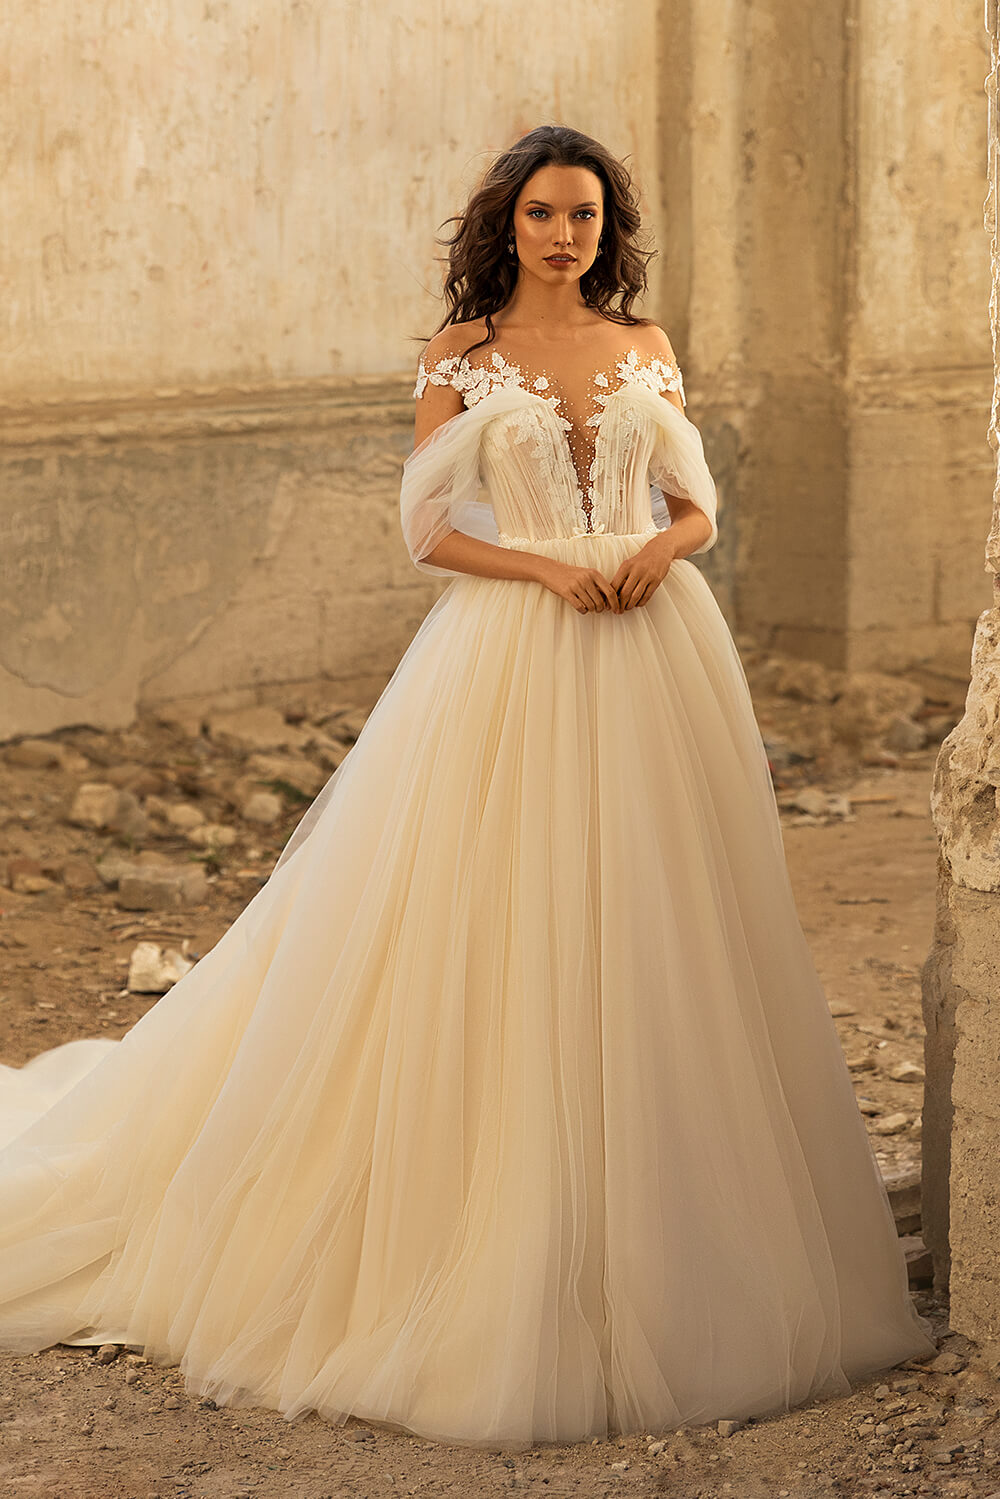 emily bride dress 2